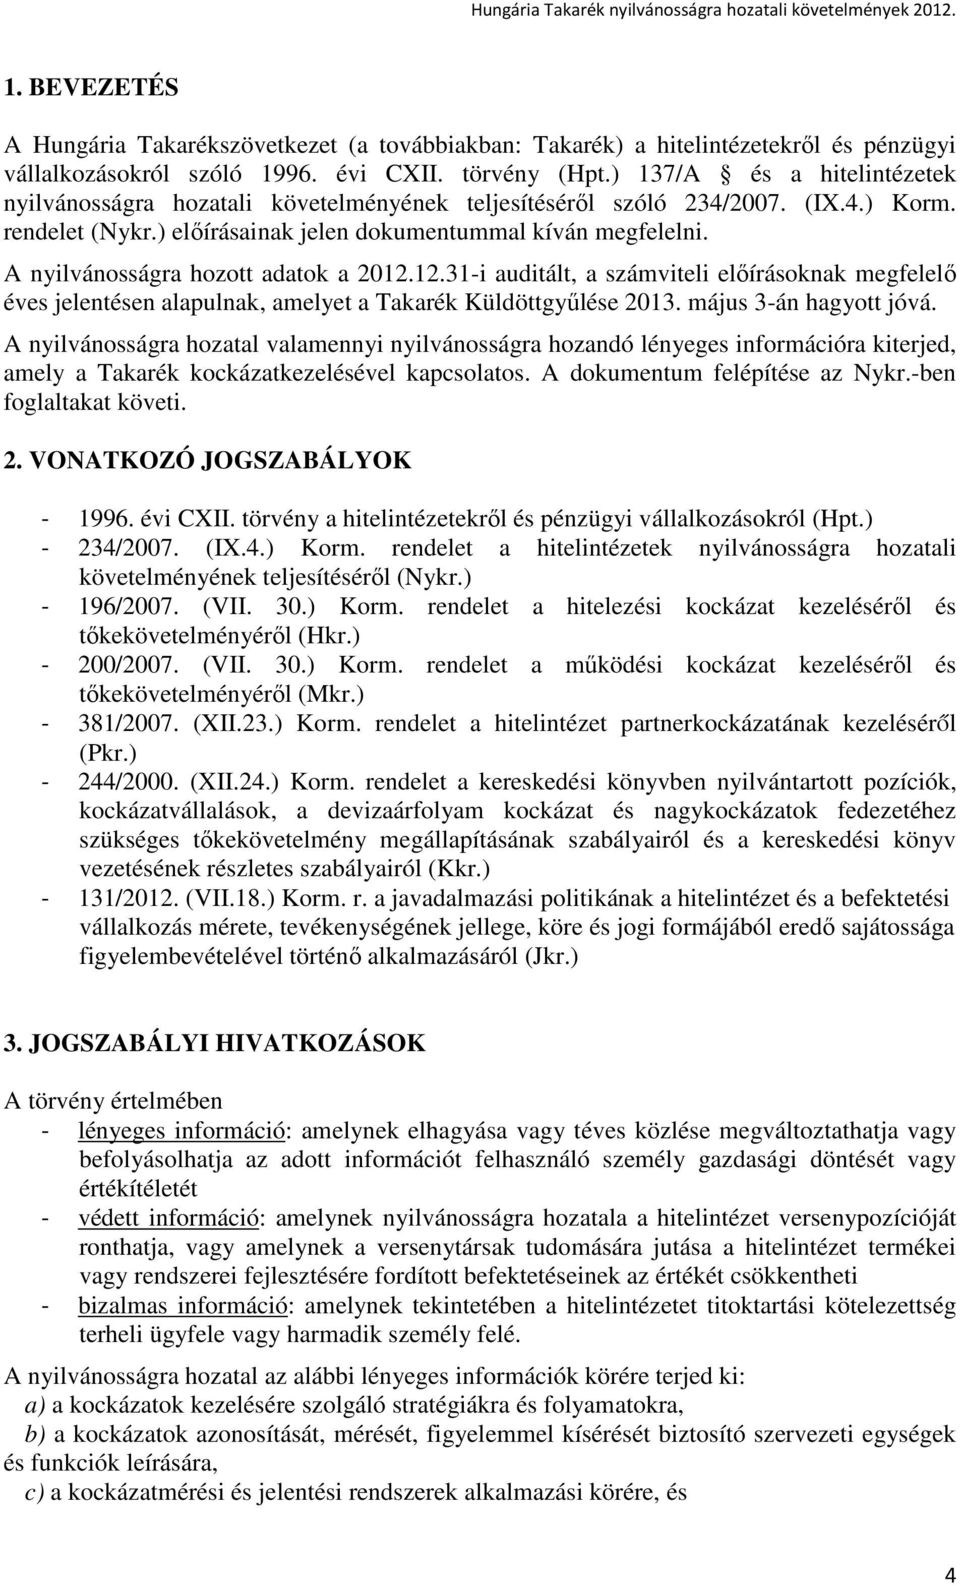 A nyilvánosságra hozott adatok a 2012.12.31-i auditált, a számviteli elıírásoknak megfelelı éves jelentésen alapulnak, amelyet a Takarék Küldöttgyőlése 2013. május 3-án hagyott jóvá.